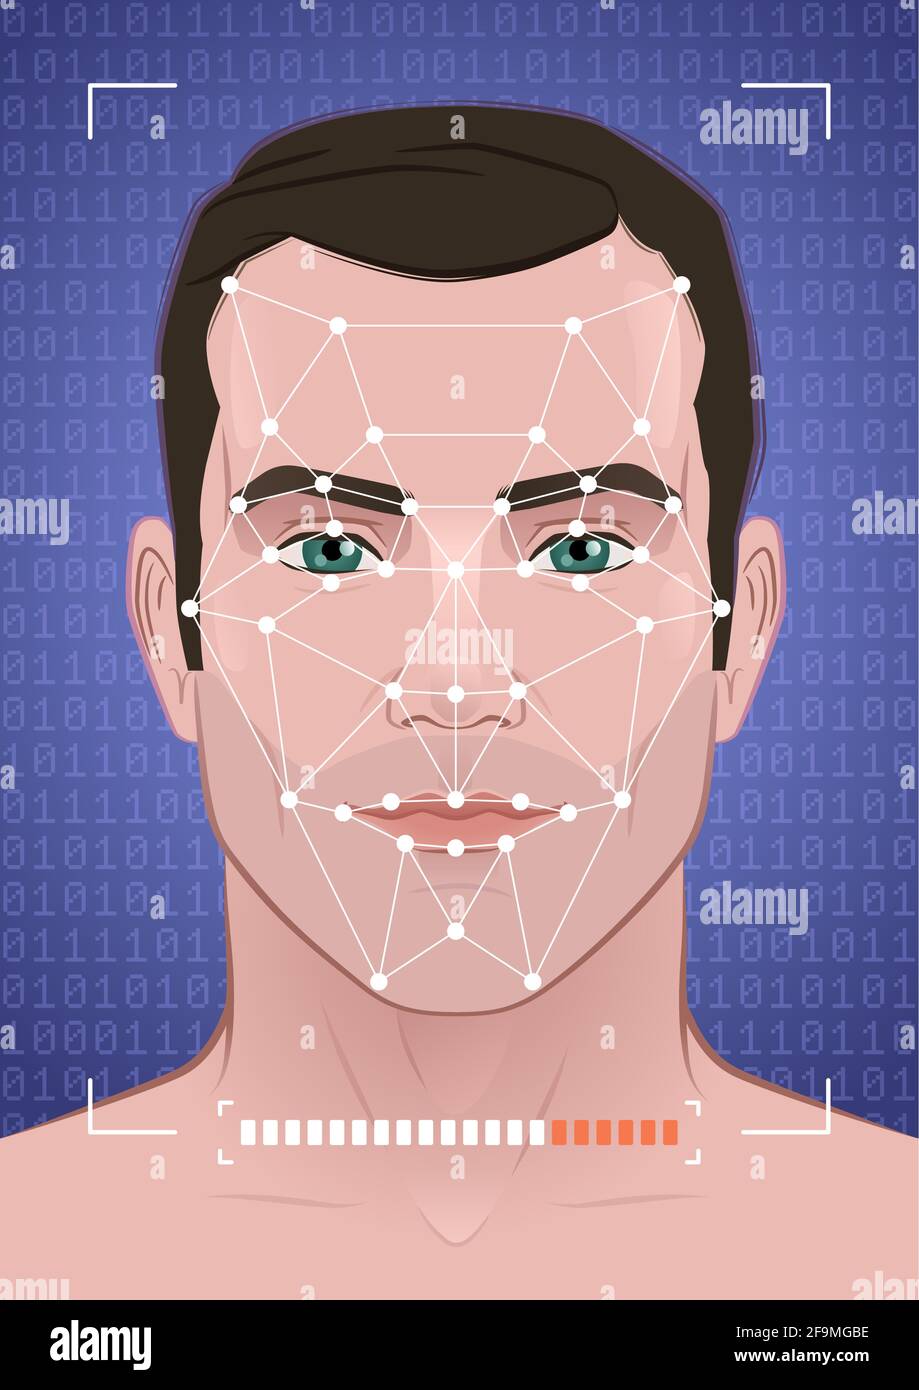 Riconoscimento facciale biometrico Illustrazione Vettoriale